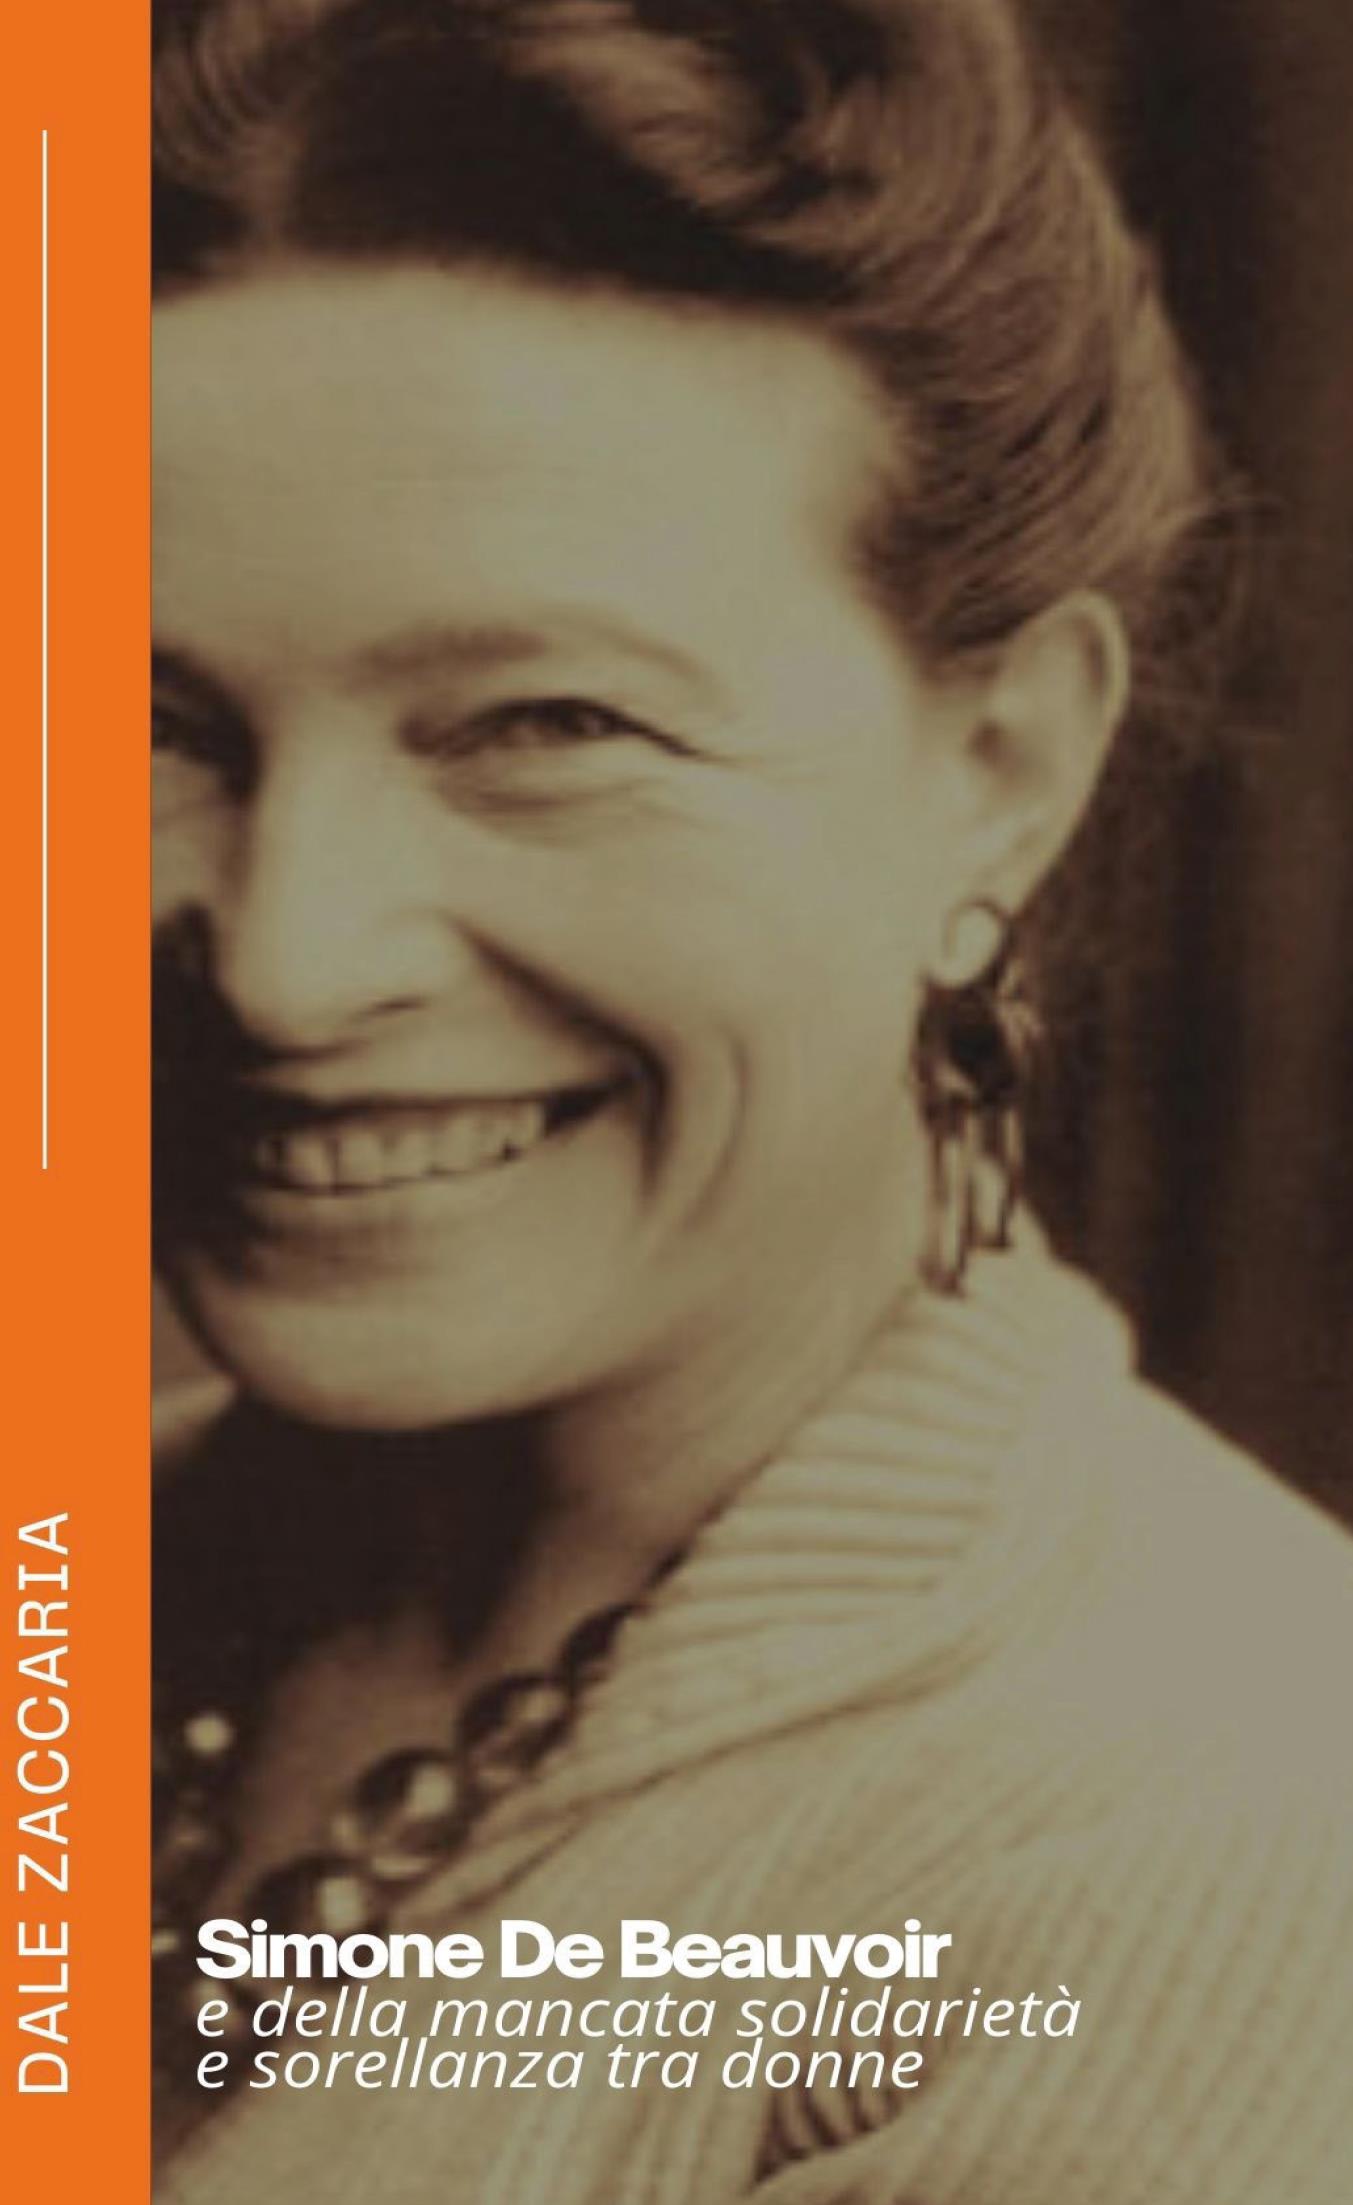 Simone De Beauvoir e della mancata solidarietà e sorellanza tra donne